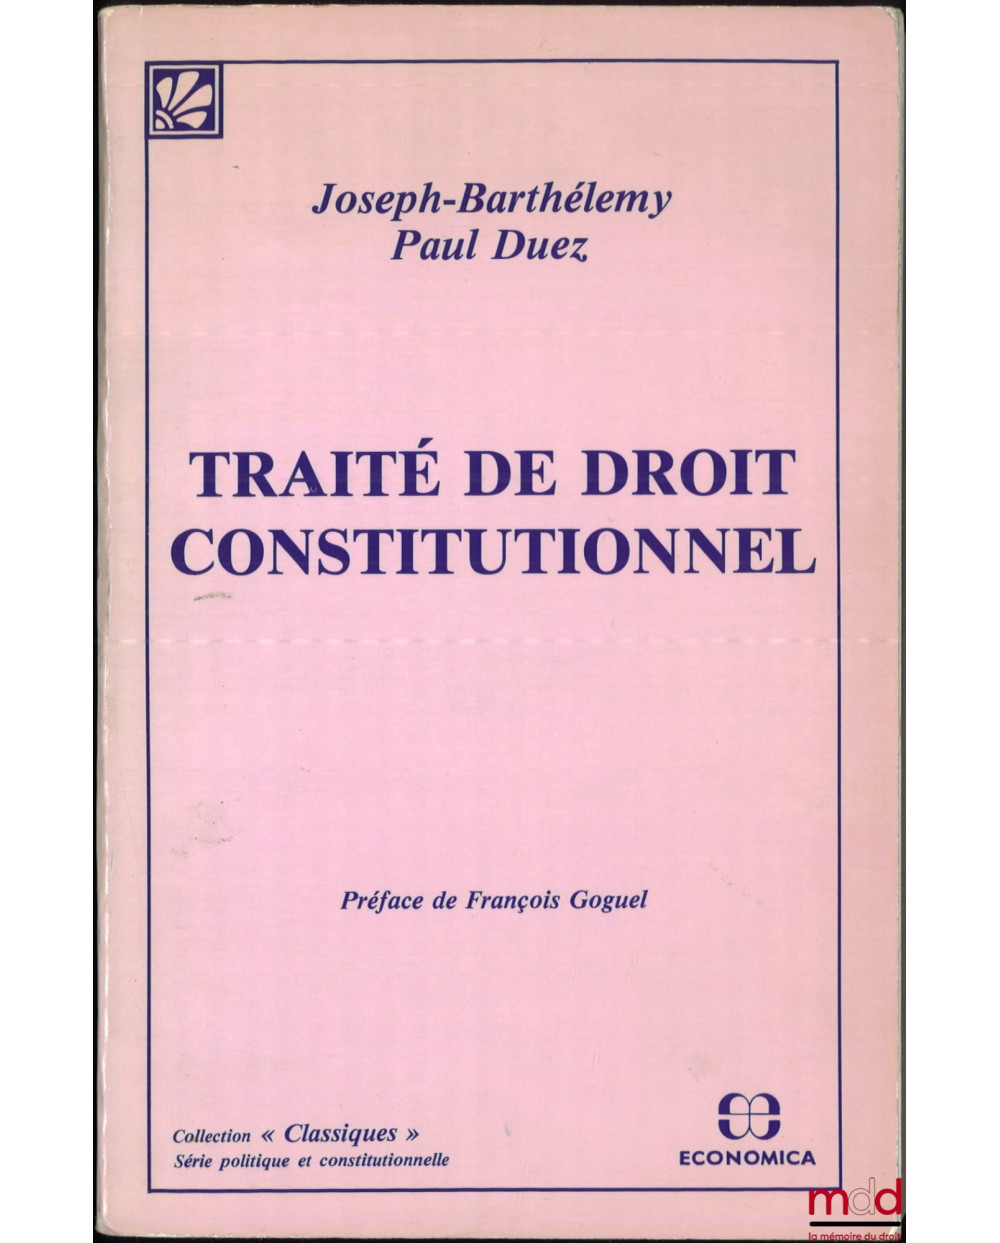 TRAITÉ DE DROIT CONSTITUTIONNEL, Préface de François Goguel, éd. de 1933, coll. « Classiques », [réédition]